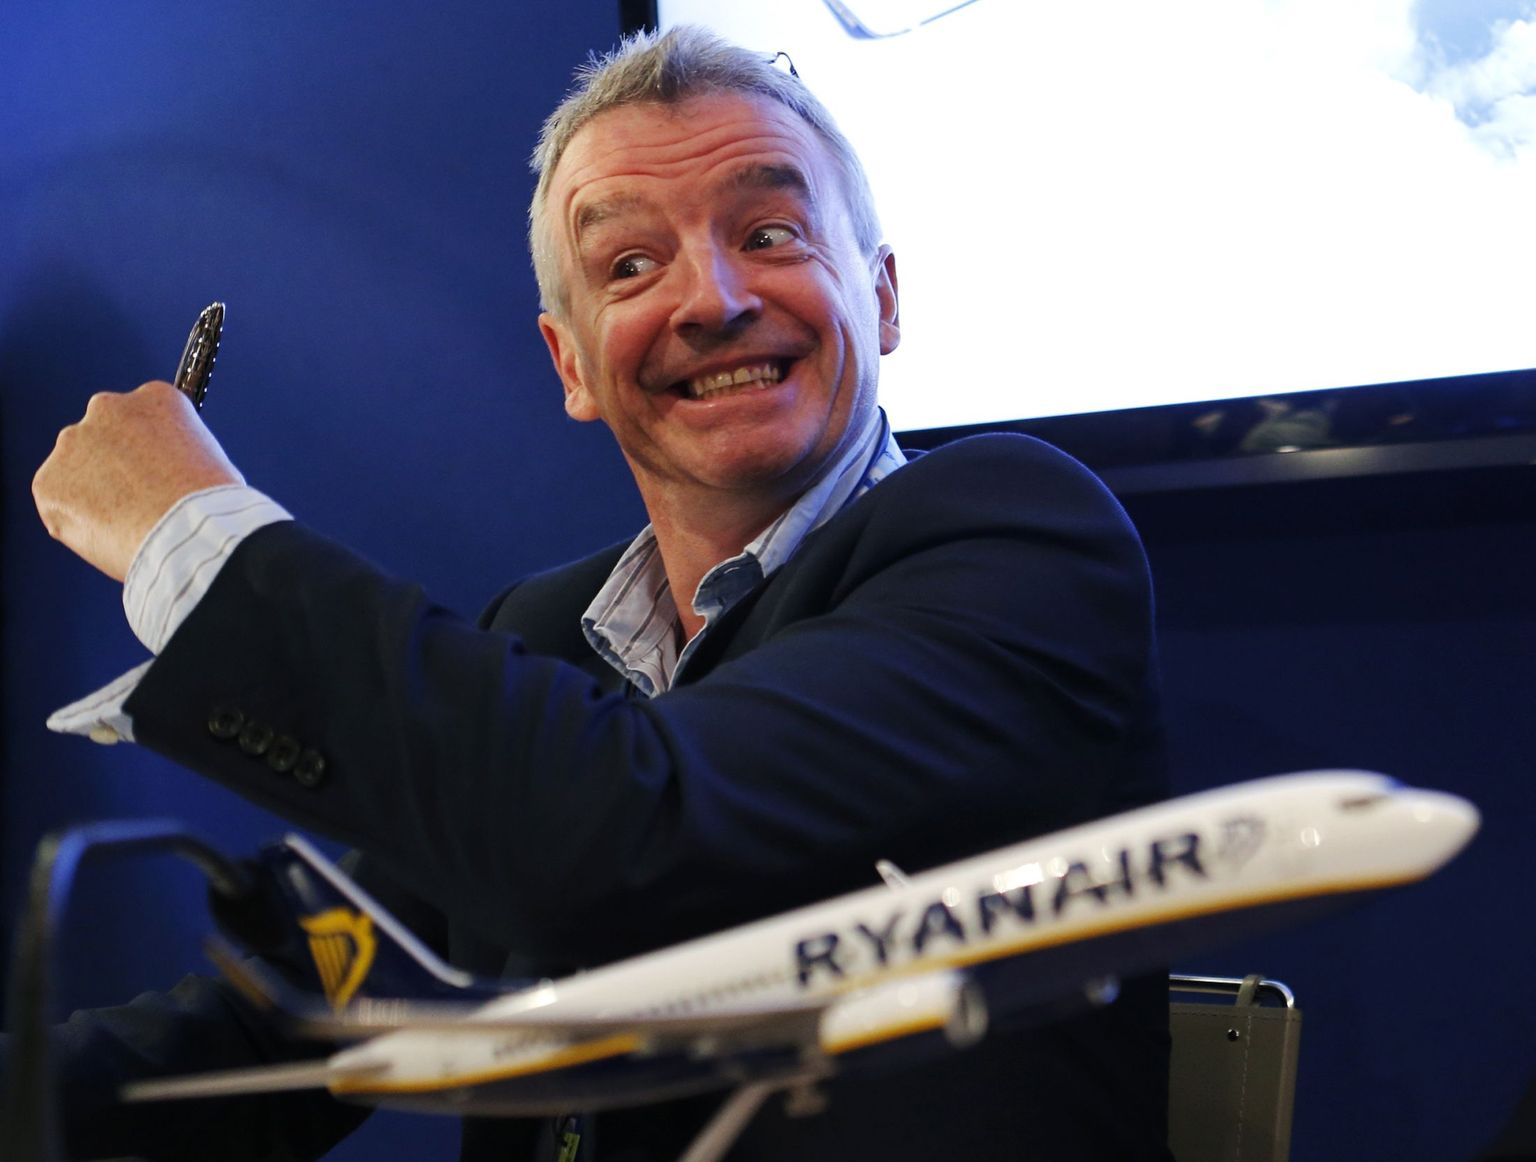 Ryanair'i juht Michael O'Leary lubas aktsionäridele, et nad hakkavad kliente paremini kohtlema.